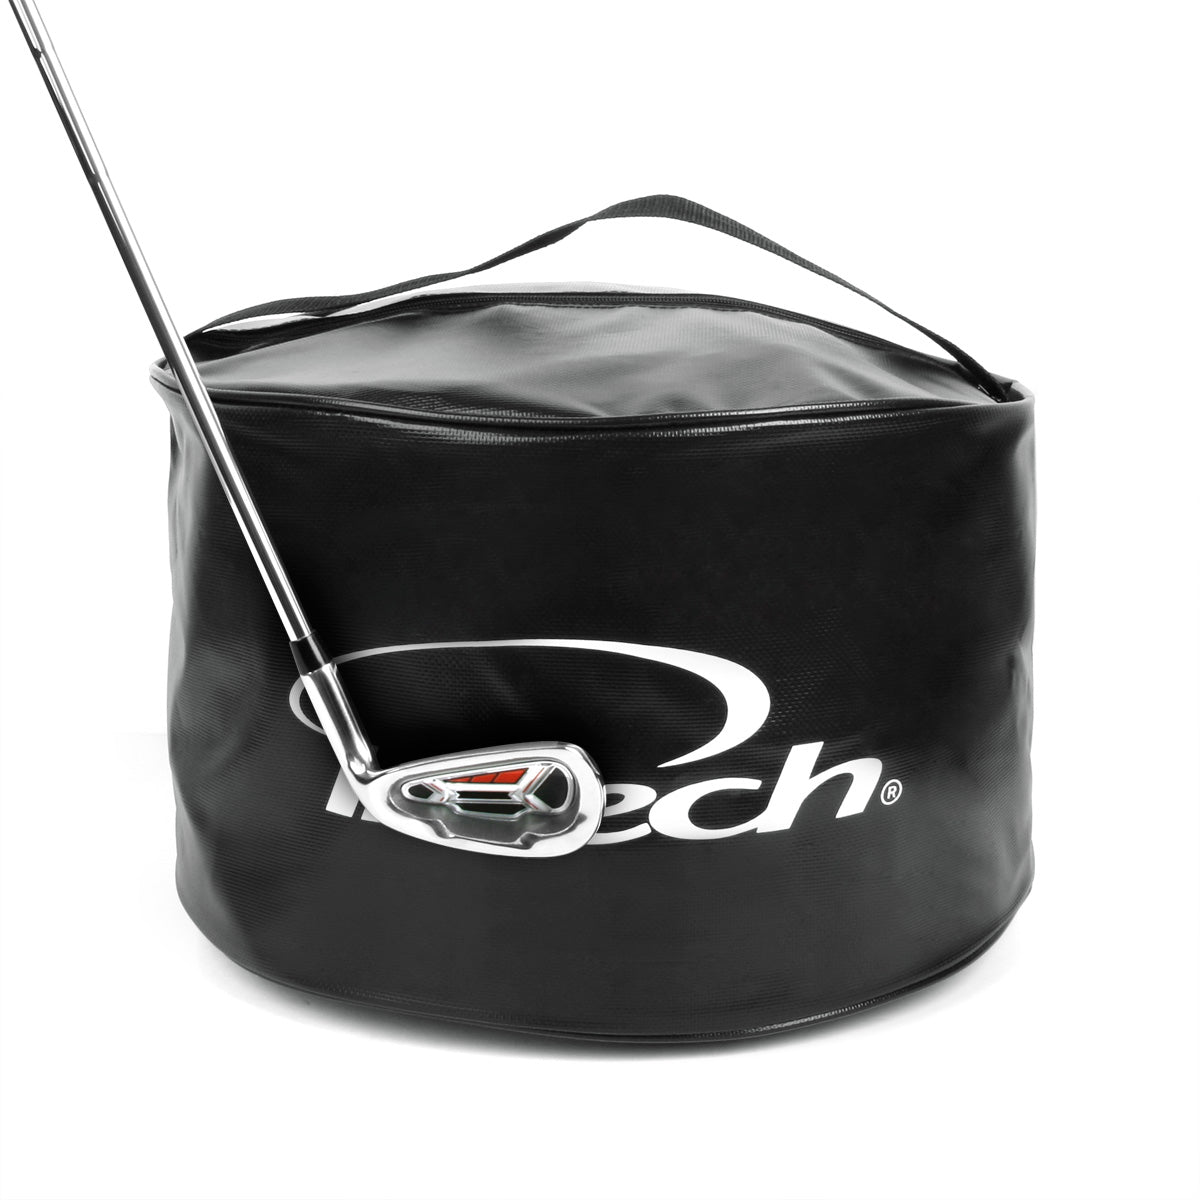 golf iron striking the Intech logo on the side of an Intech Golf Impact Bag